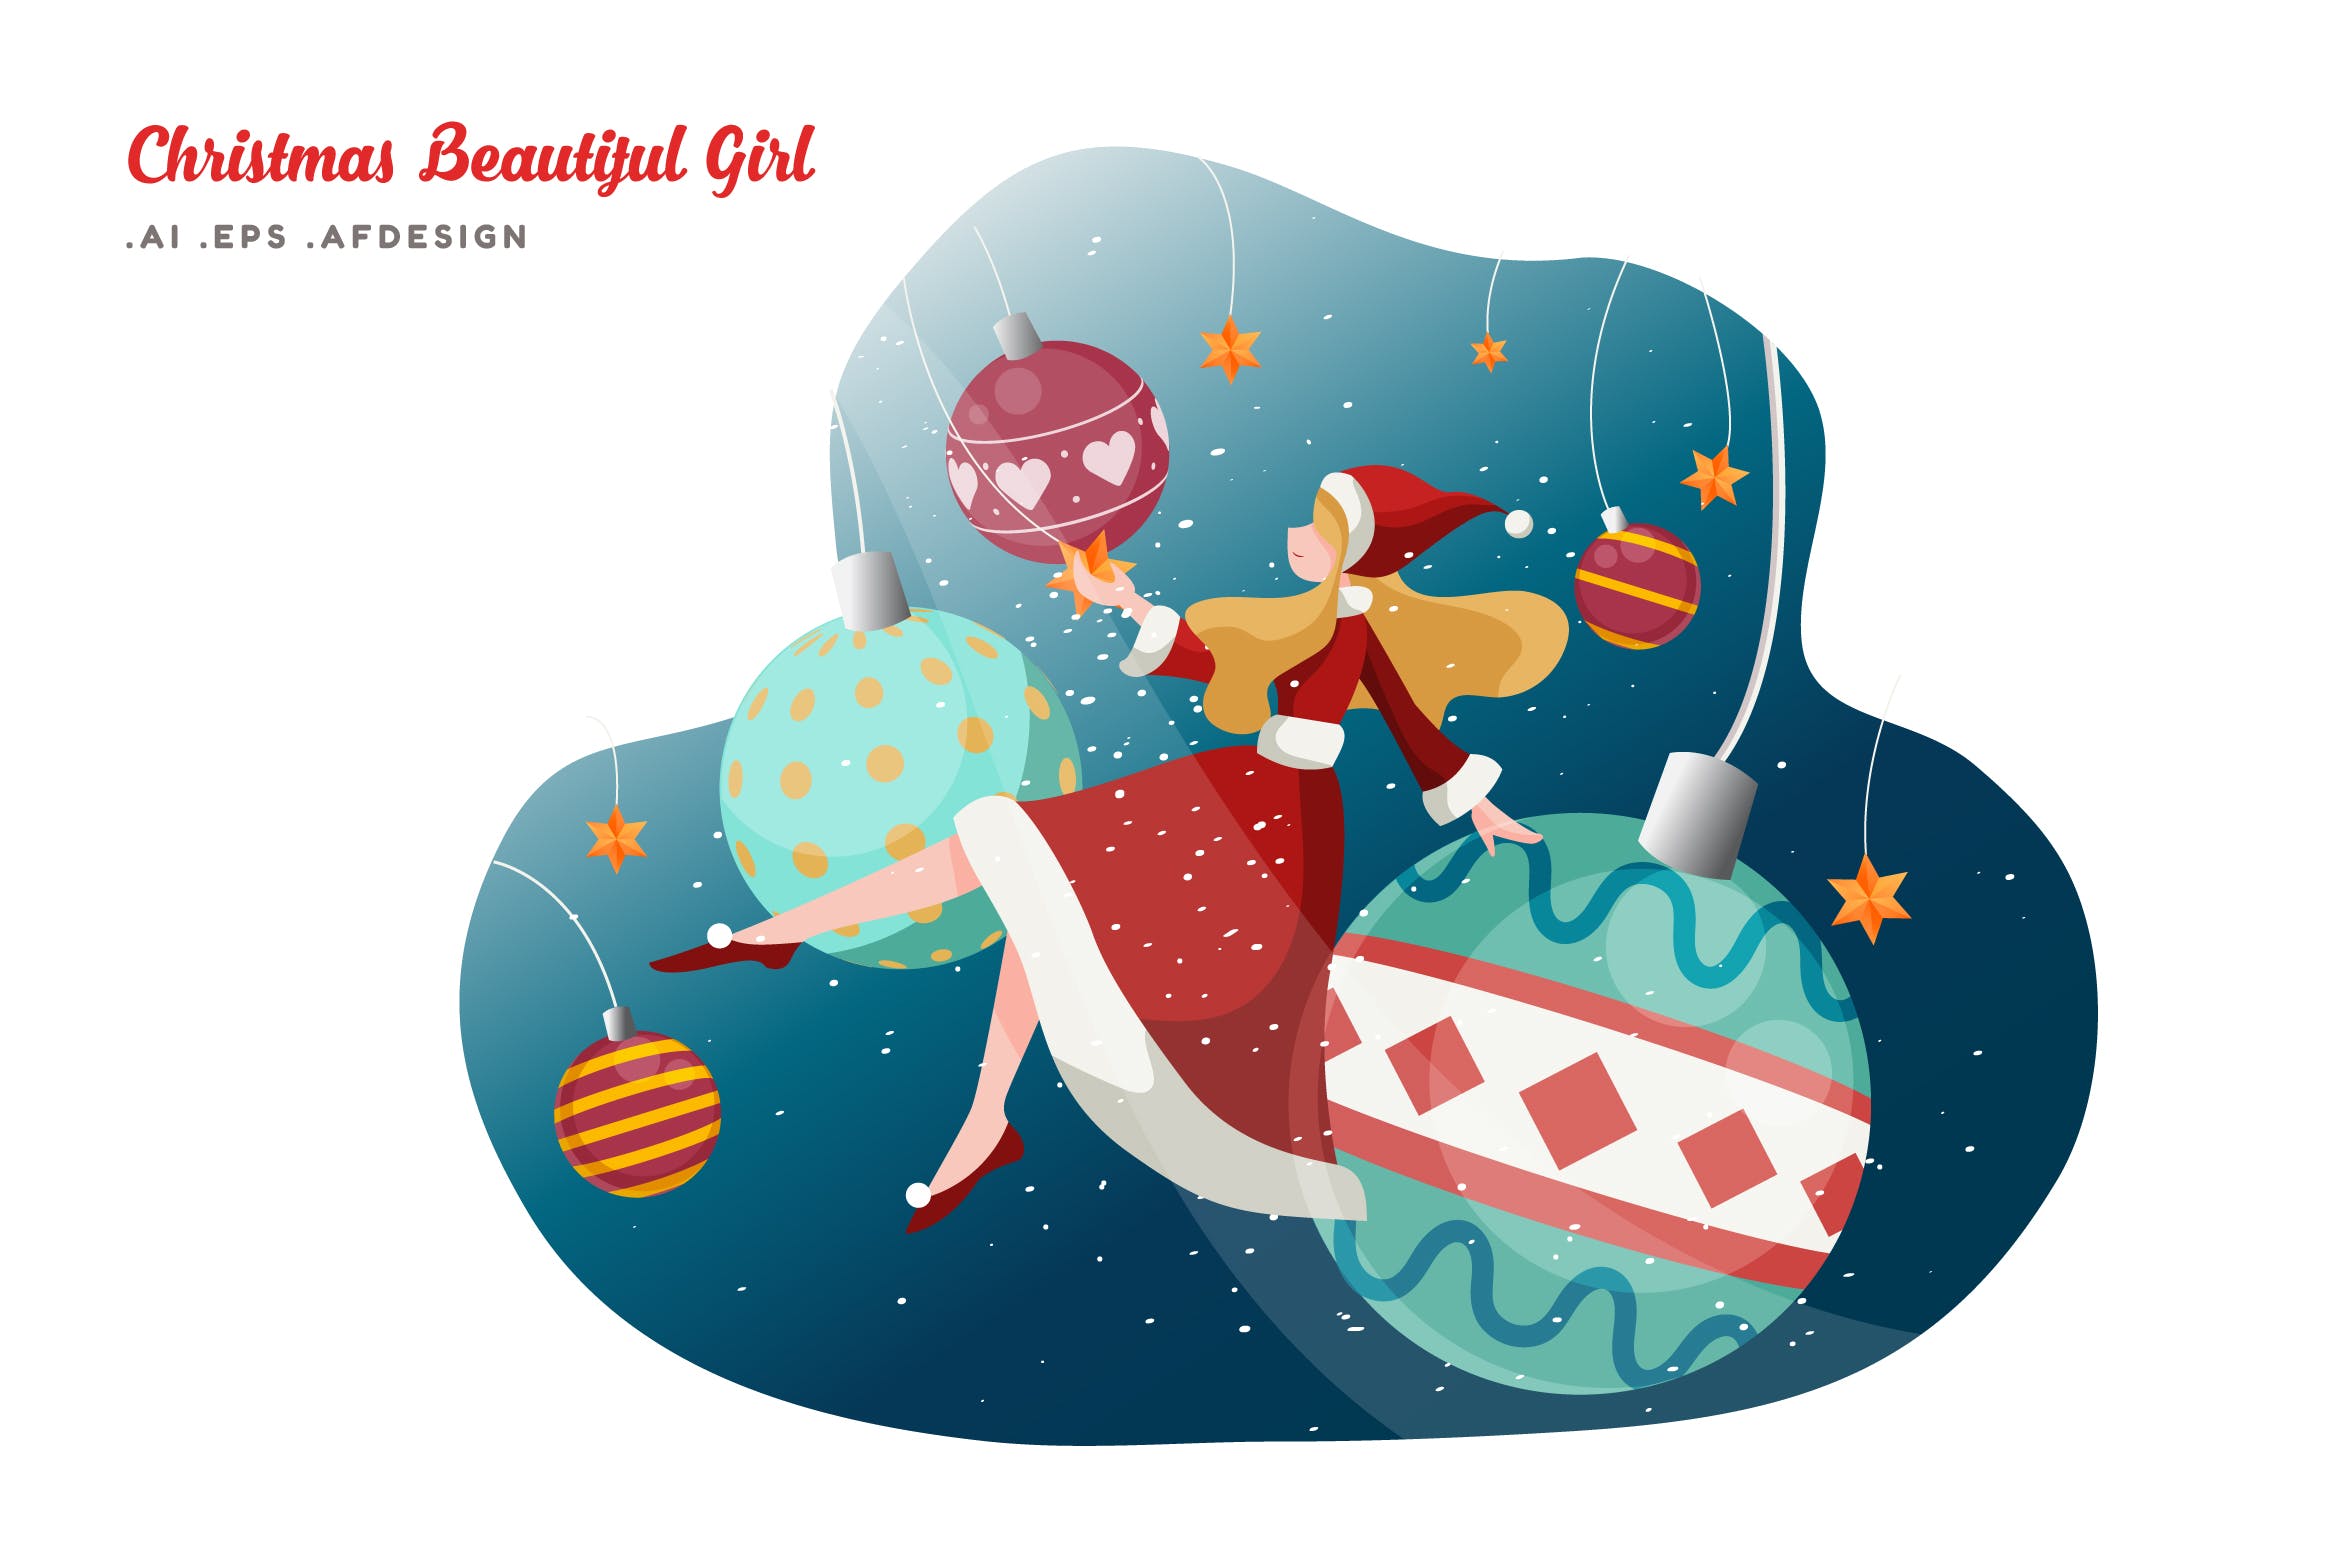 美丽女孩主题圣诞快乐矢量插画 Merry Christmas Beautiful Girl Vector Illustration设计素材模板